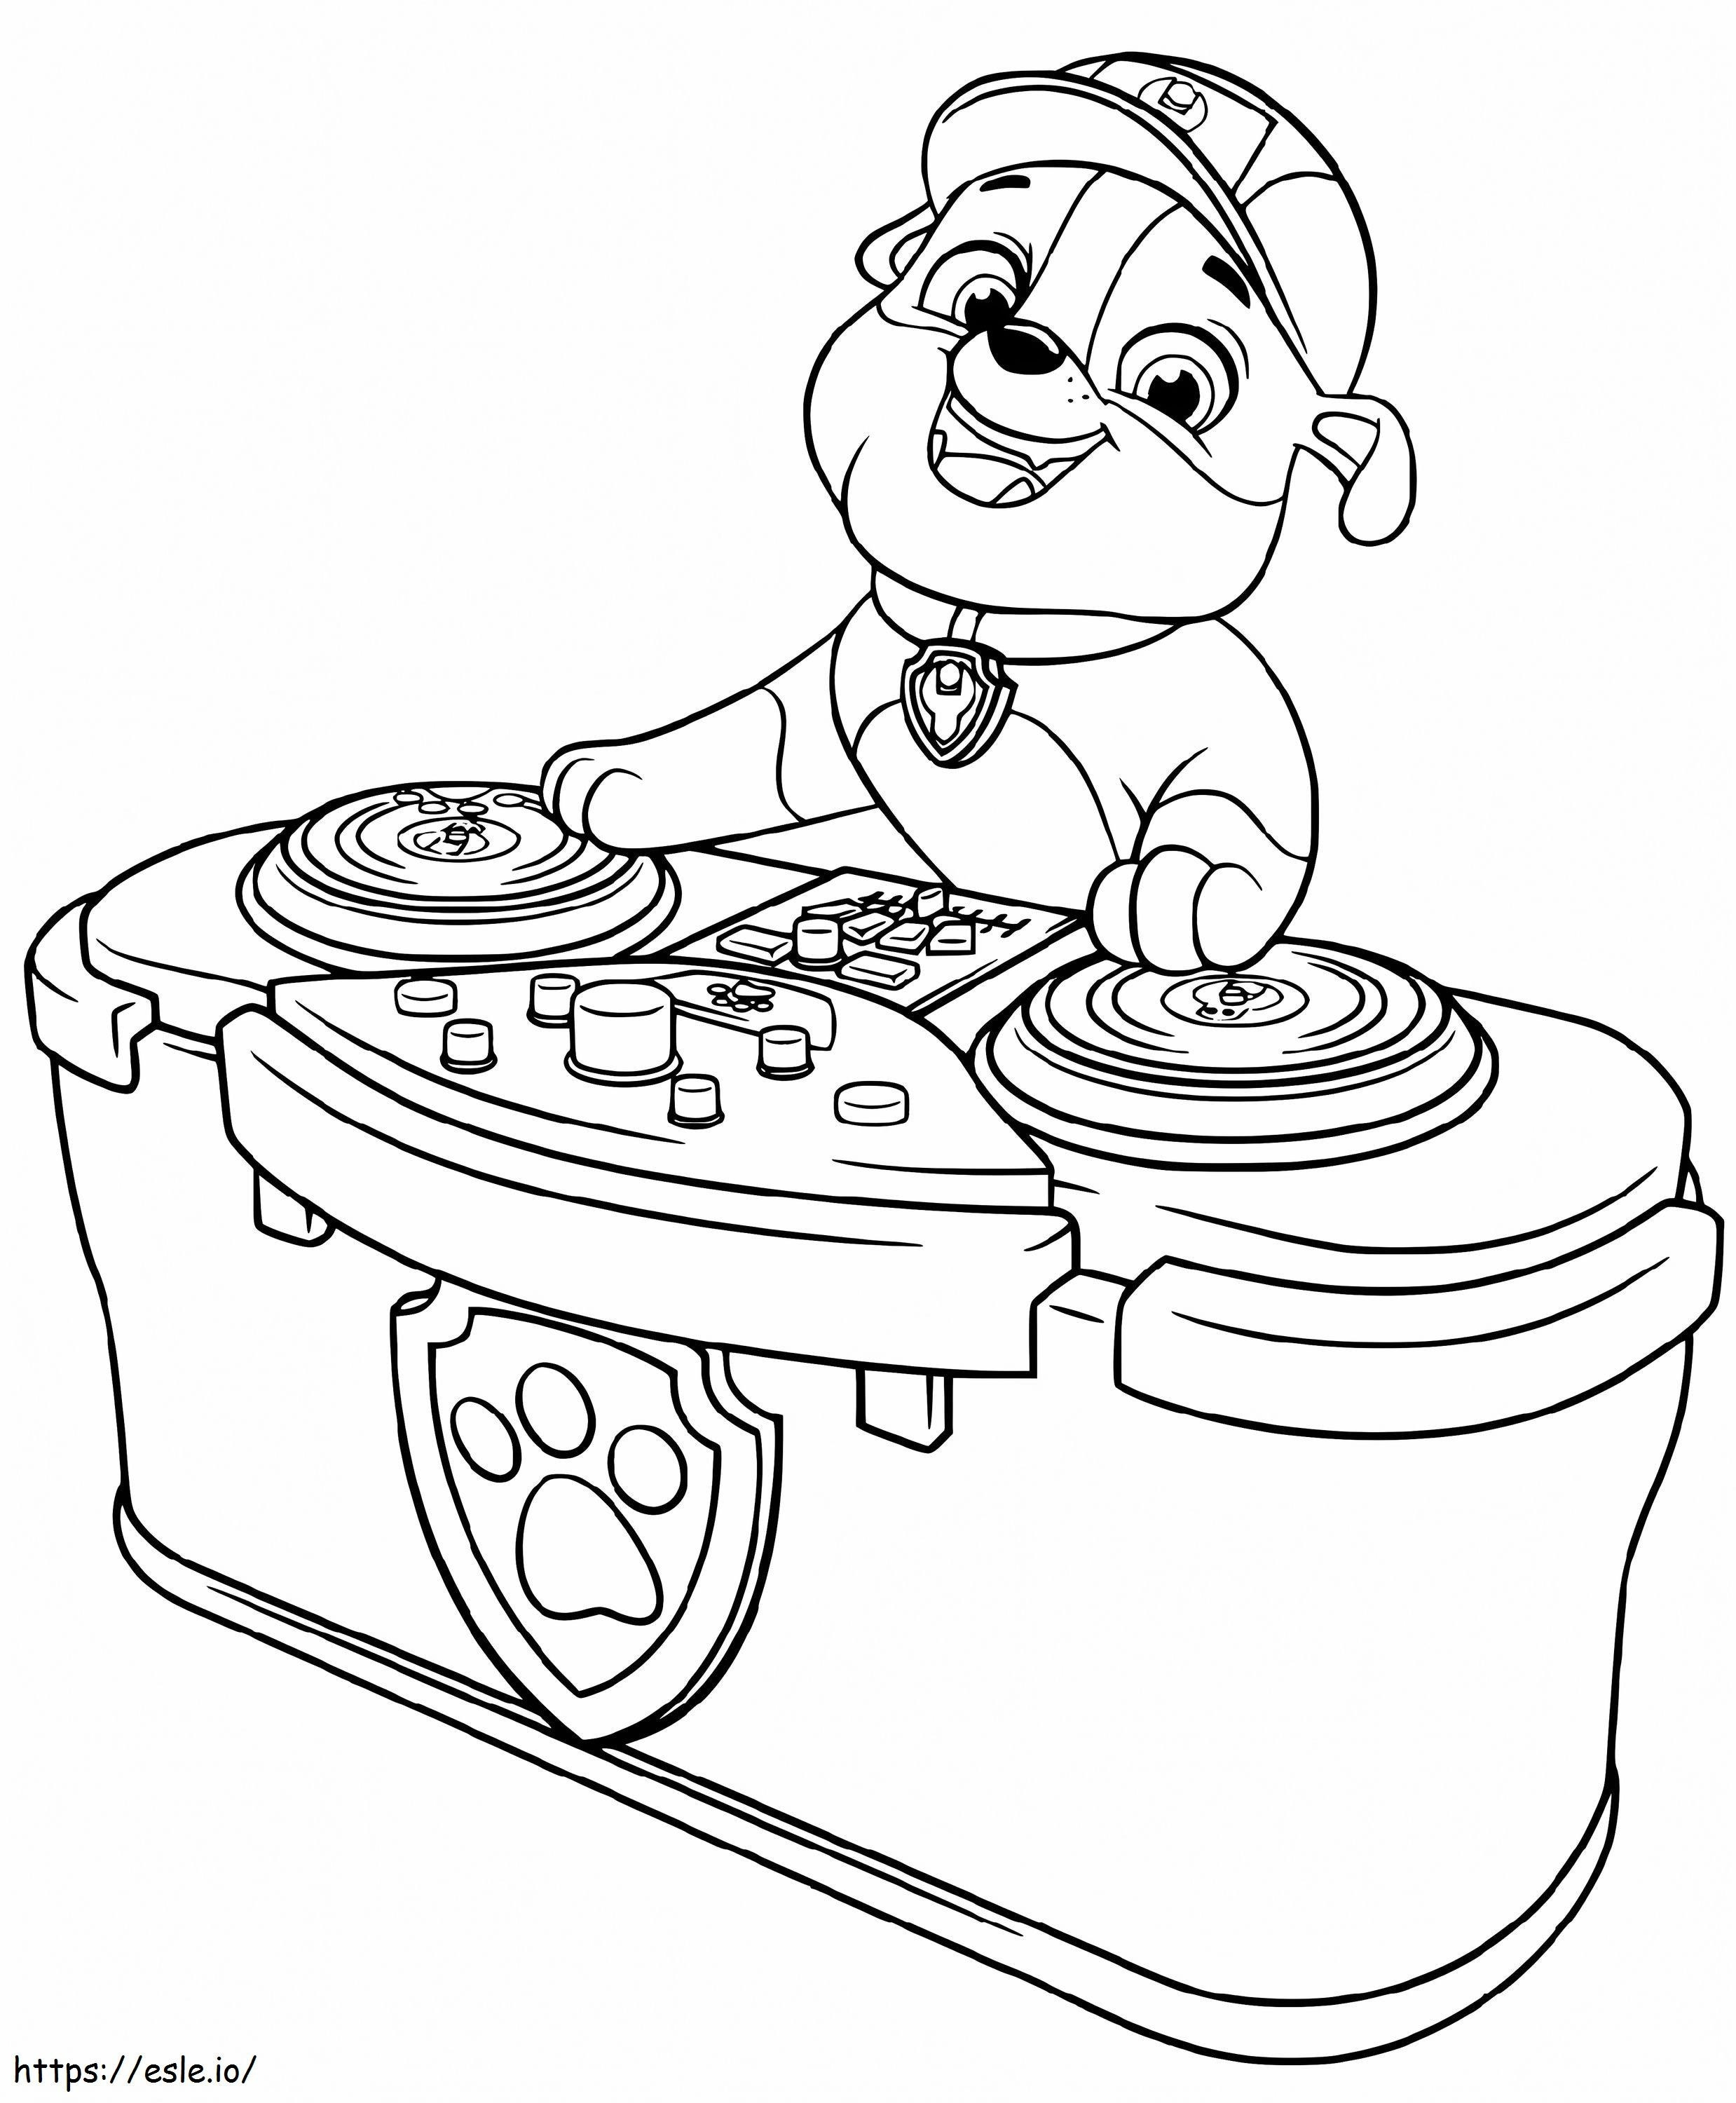 DJ Rubble kolorowanka